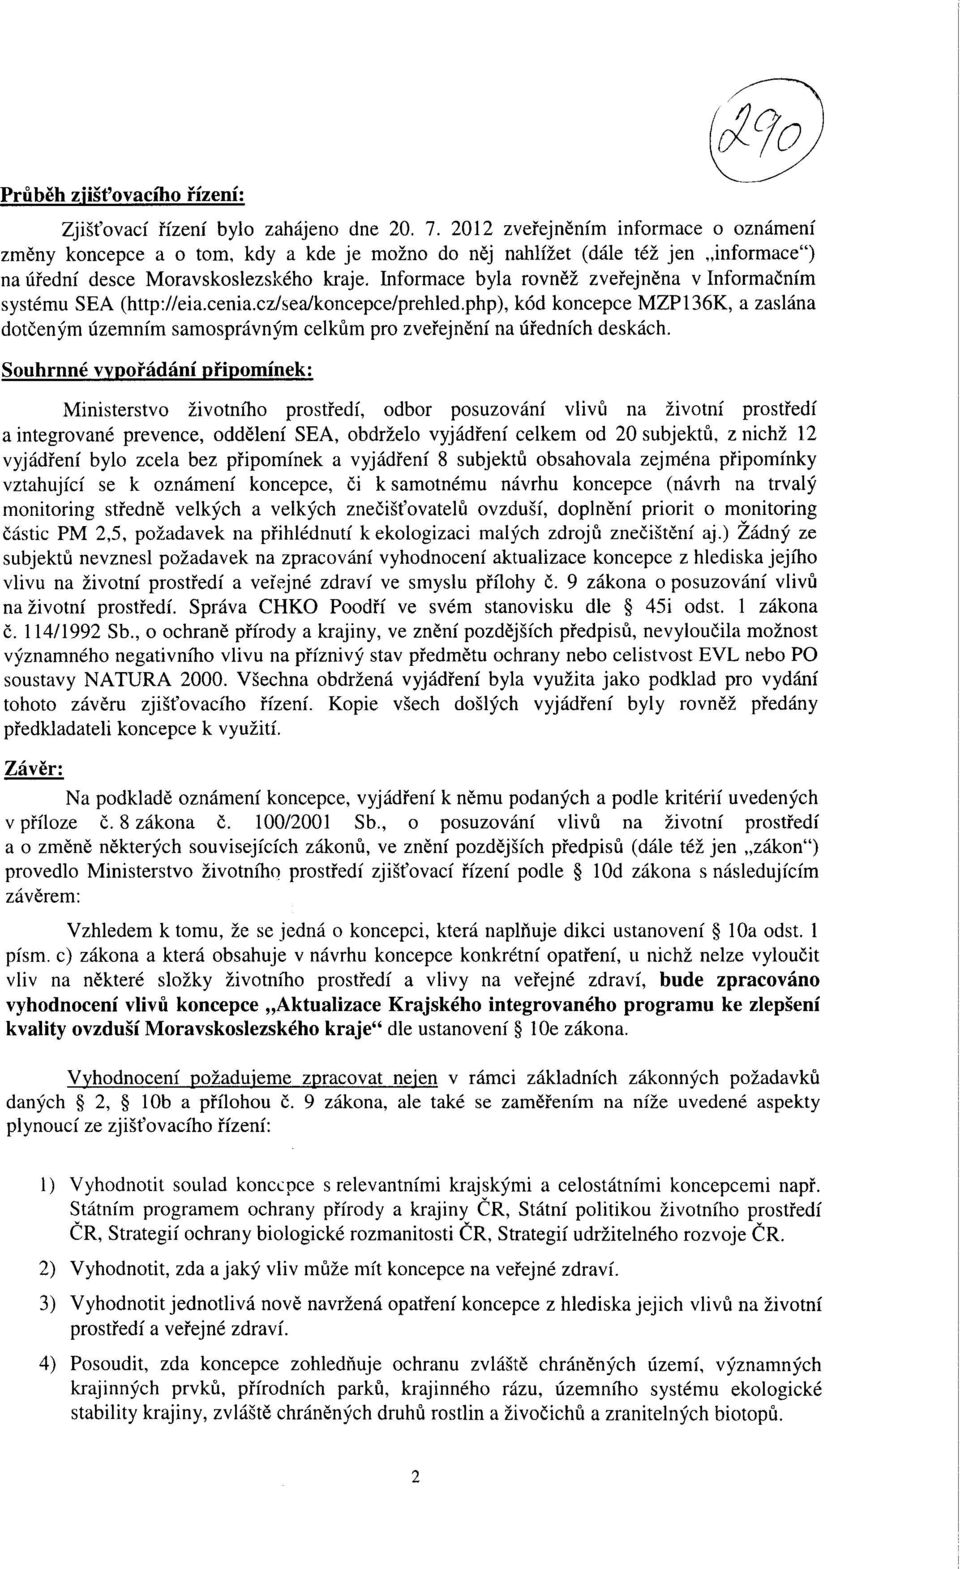 Informace byla rovne2 zvefejnena v Informacnfm systemu SEA (http://eia.cenia.cz/sea/koncepce/prehled.